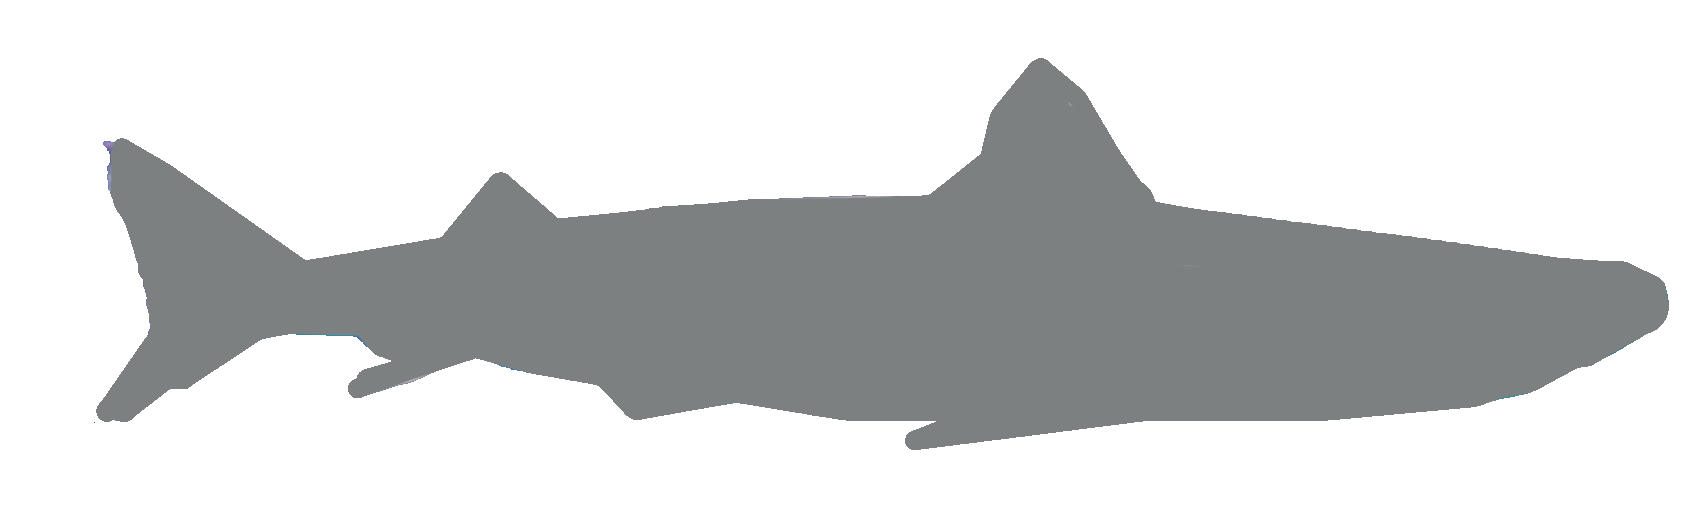 Shark Shadow